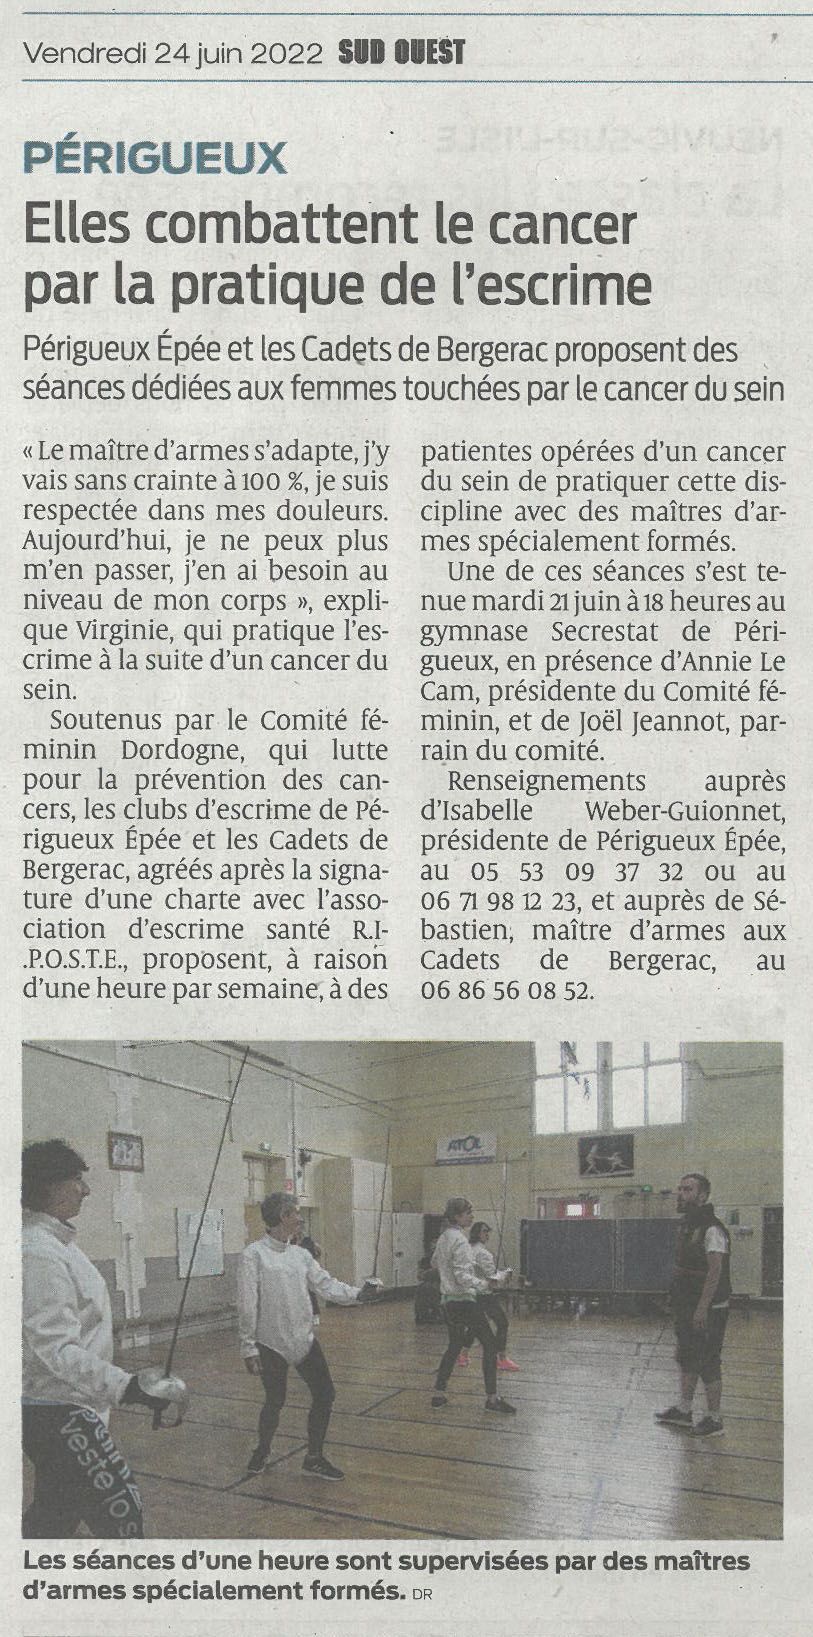 {Comité Féminin Dordogne Cancer} {Prévention et dépistage Cancer Dordogne}